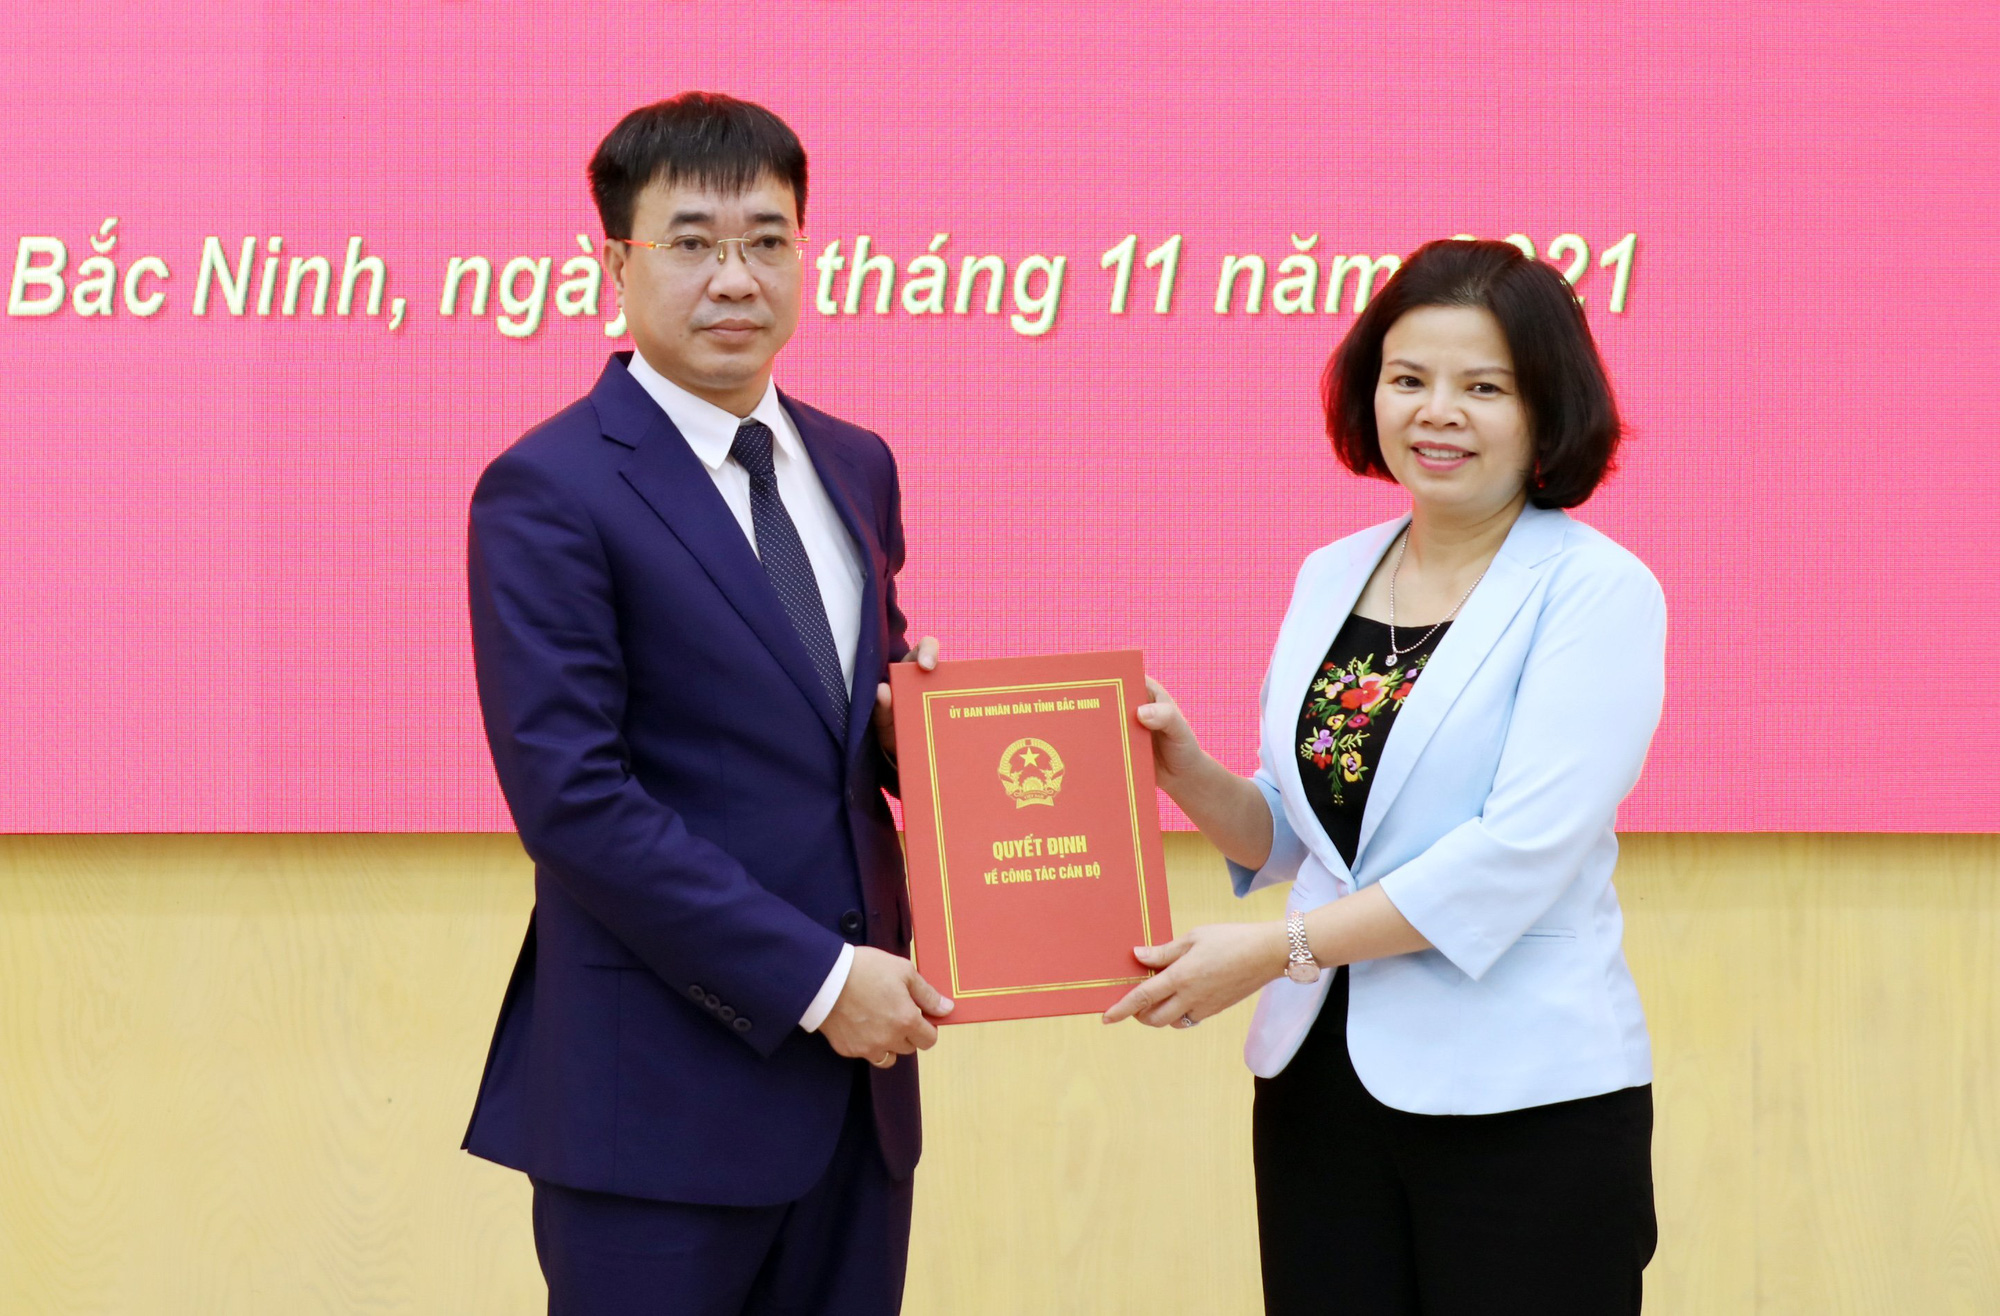 Ông Vũ Huy Phương được bổ nhiệm giữ chức Chánh văn phòng UBND tỉnh Bắc Ninh - Ảnh 1.